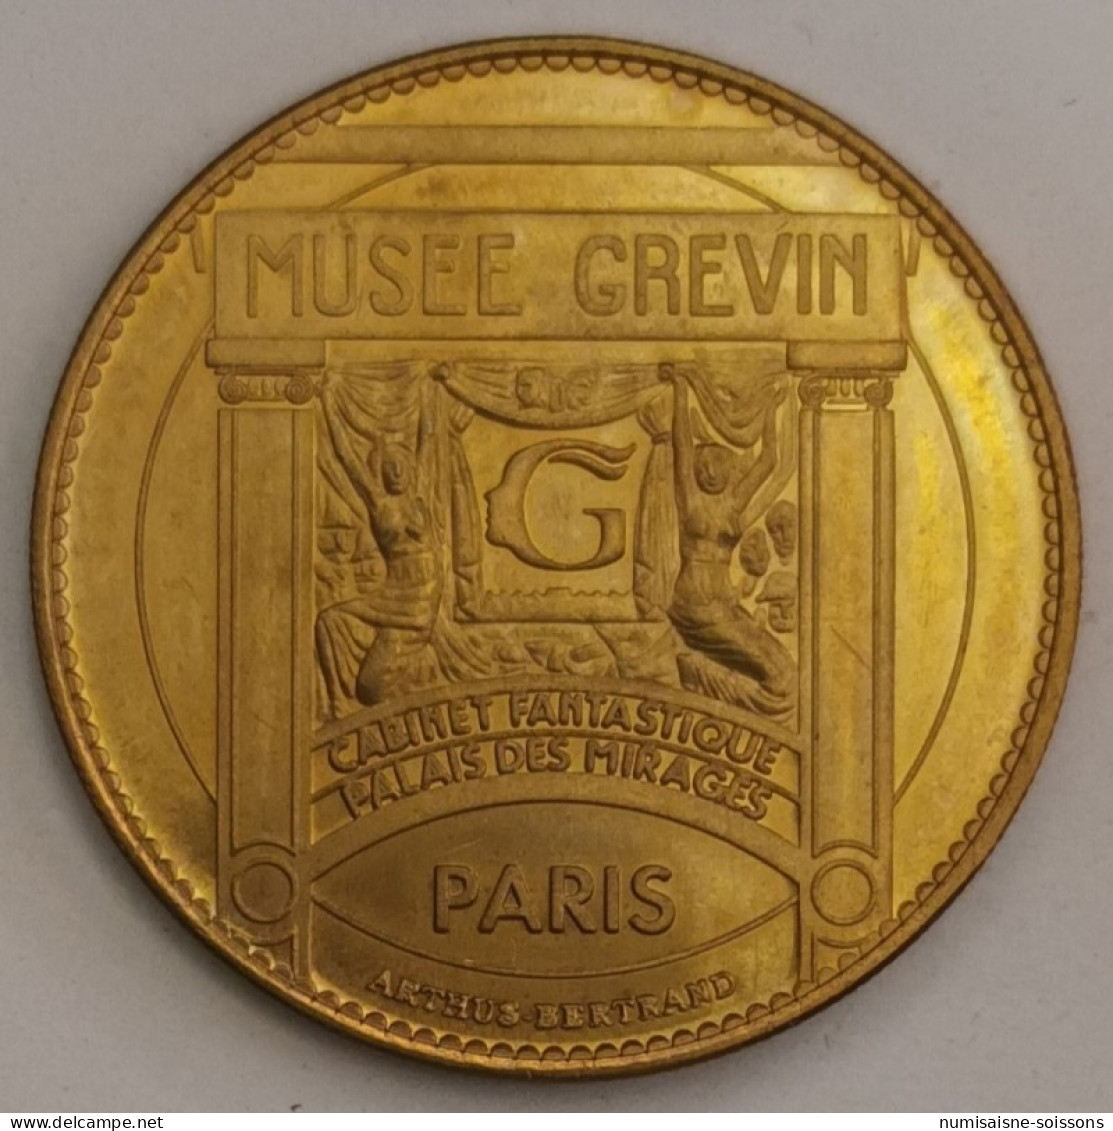 75 - PARIS - MUSEE GRÉVIN - MIMIE MATHY - ARTHUS BERTRAND - Non-datés